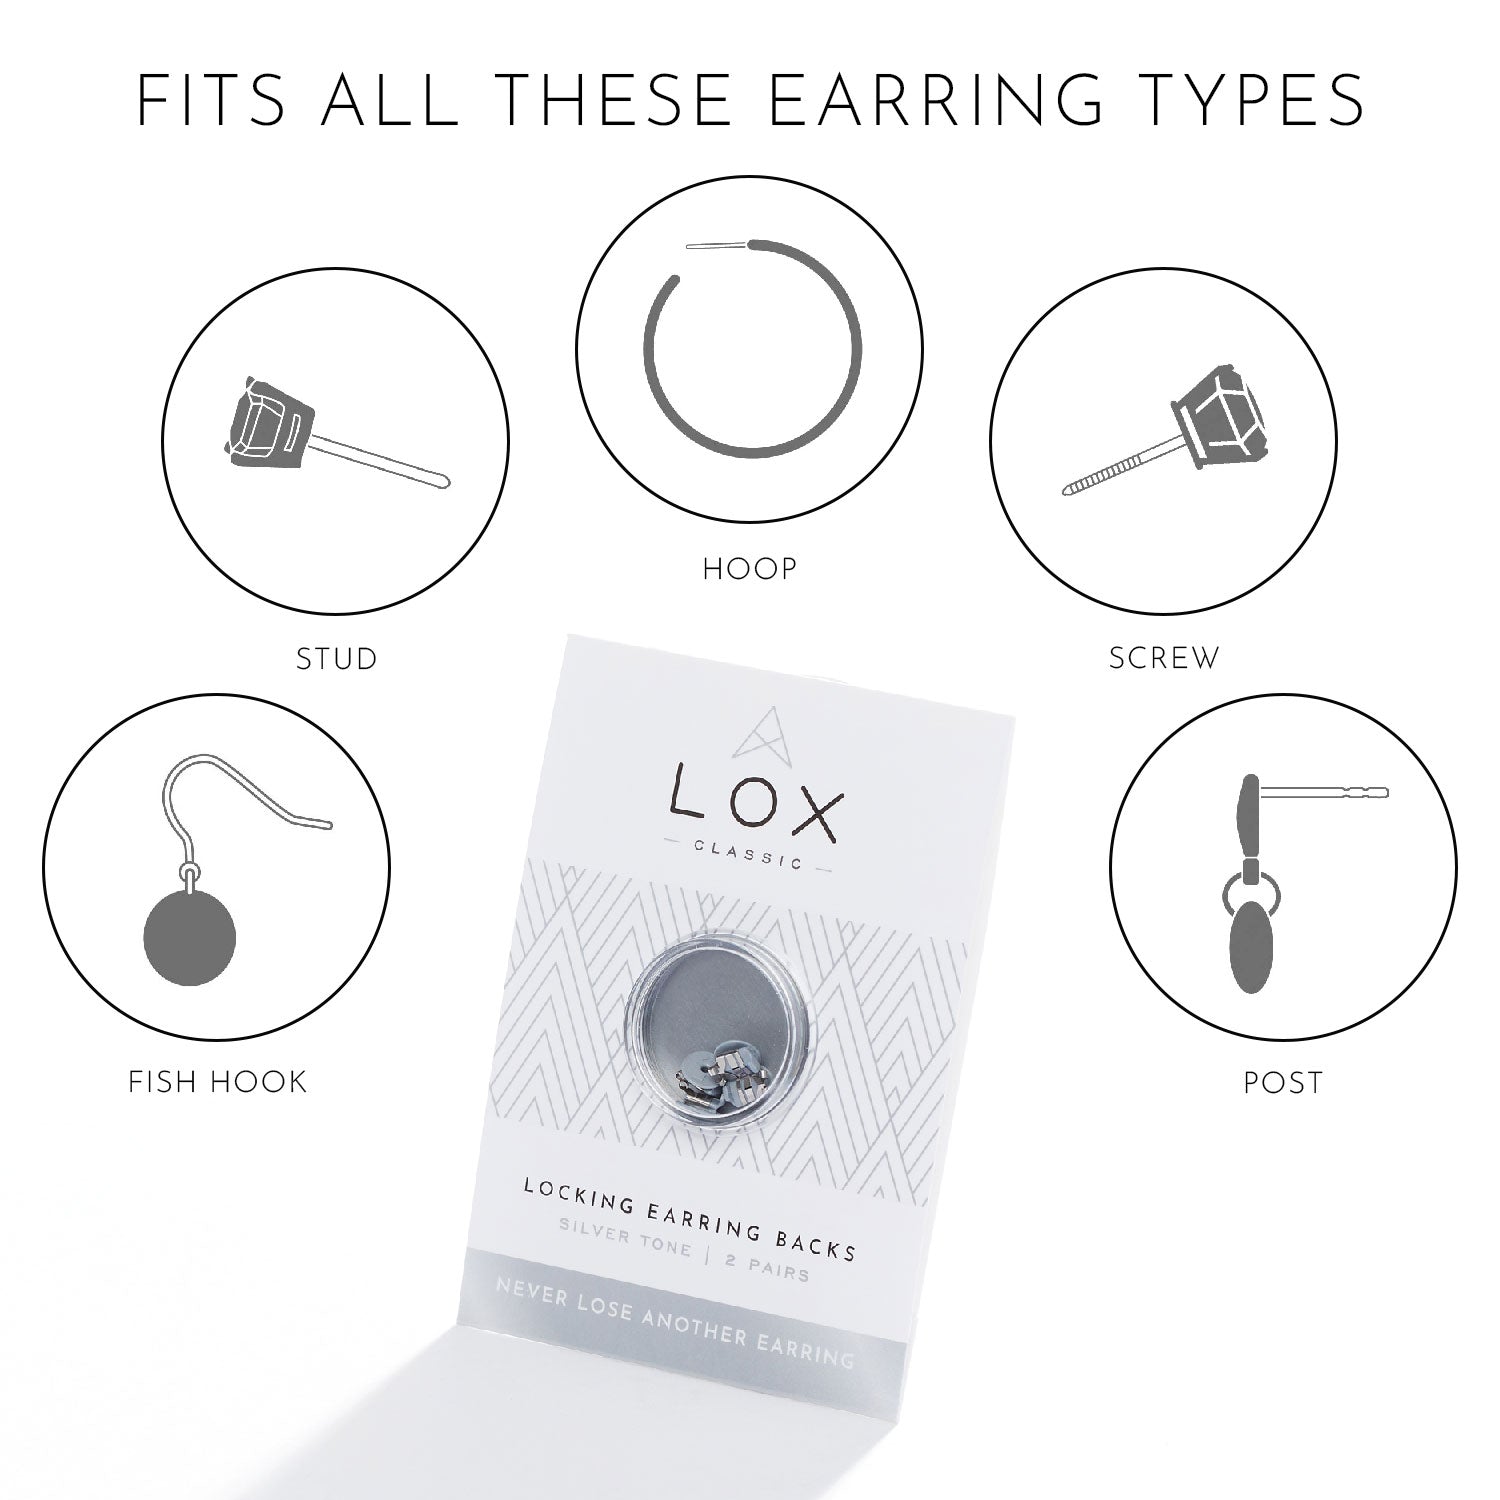 Buying earring backs - LOX - Secure Earring Backs